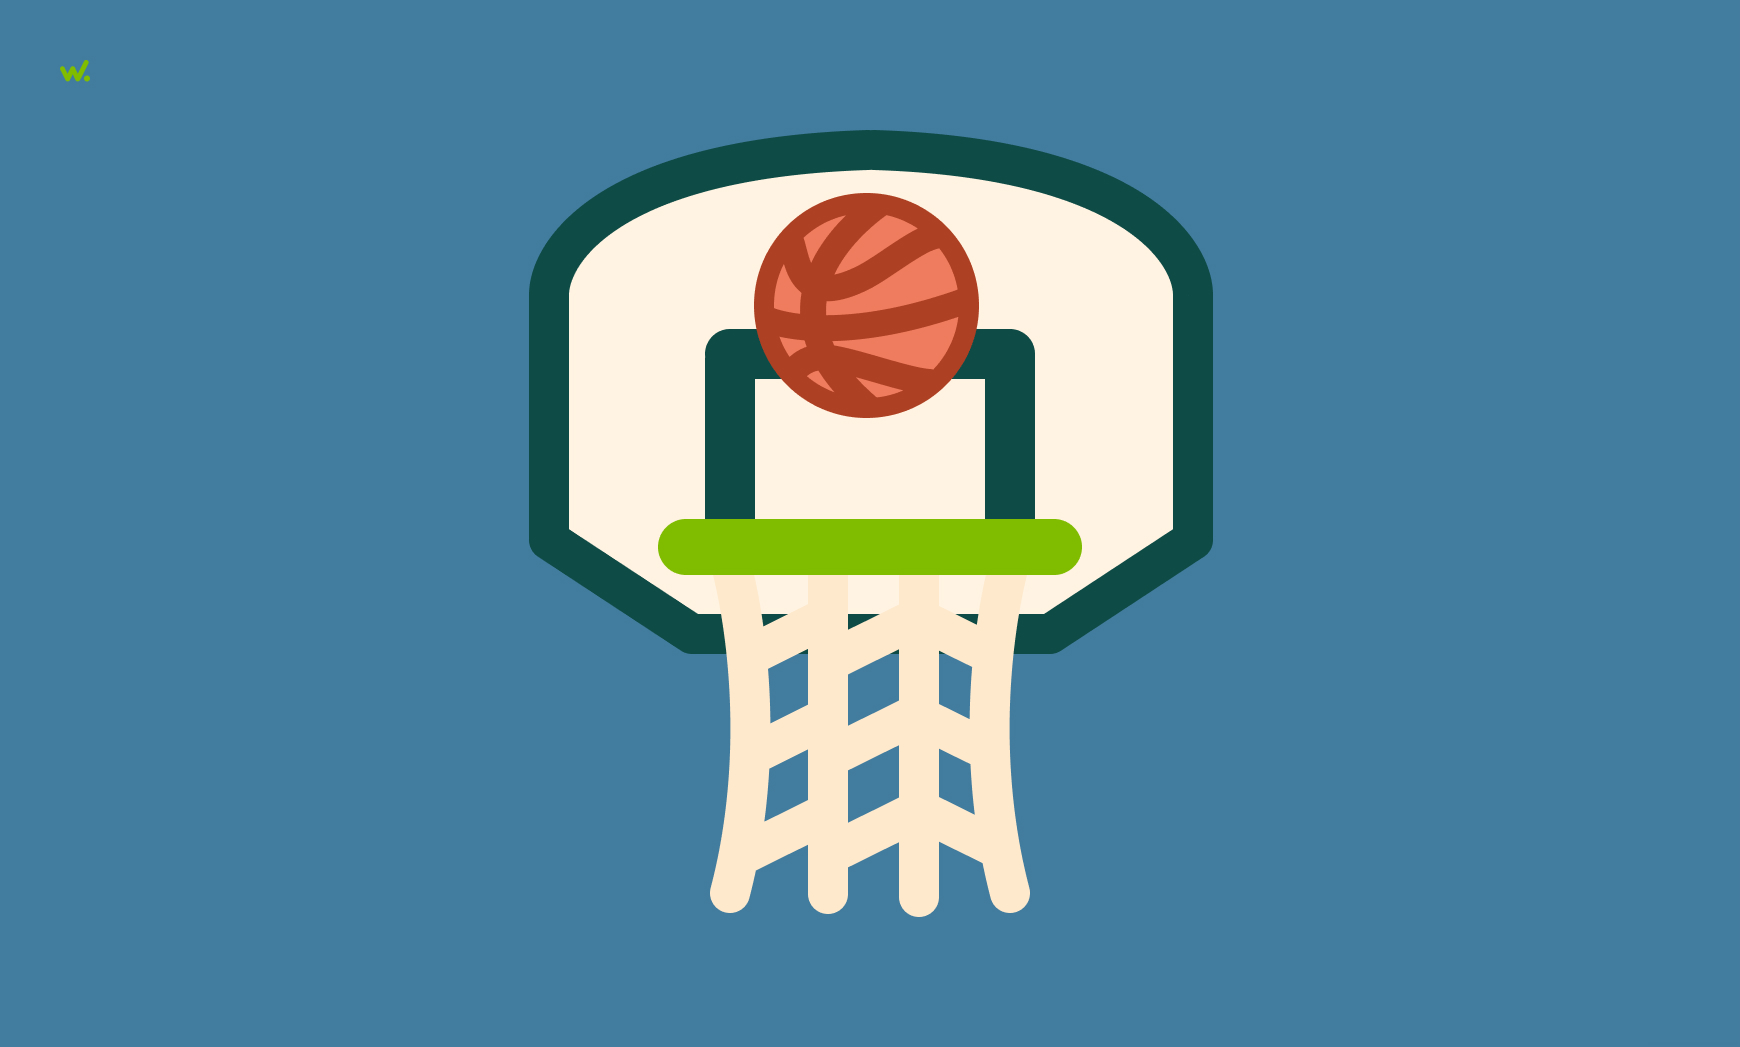 La falacia de la mano caliente tiene su origen en el baloncesto, donde es habitual creer que un jugador tiene más posibilidades de encestar, si anteriormente ya lo hizo.